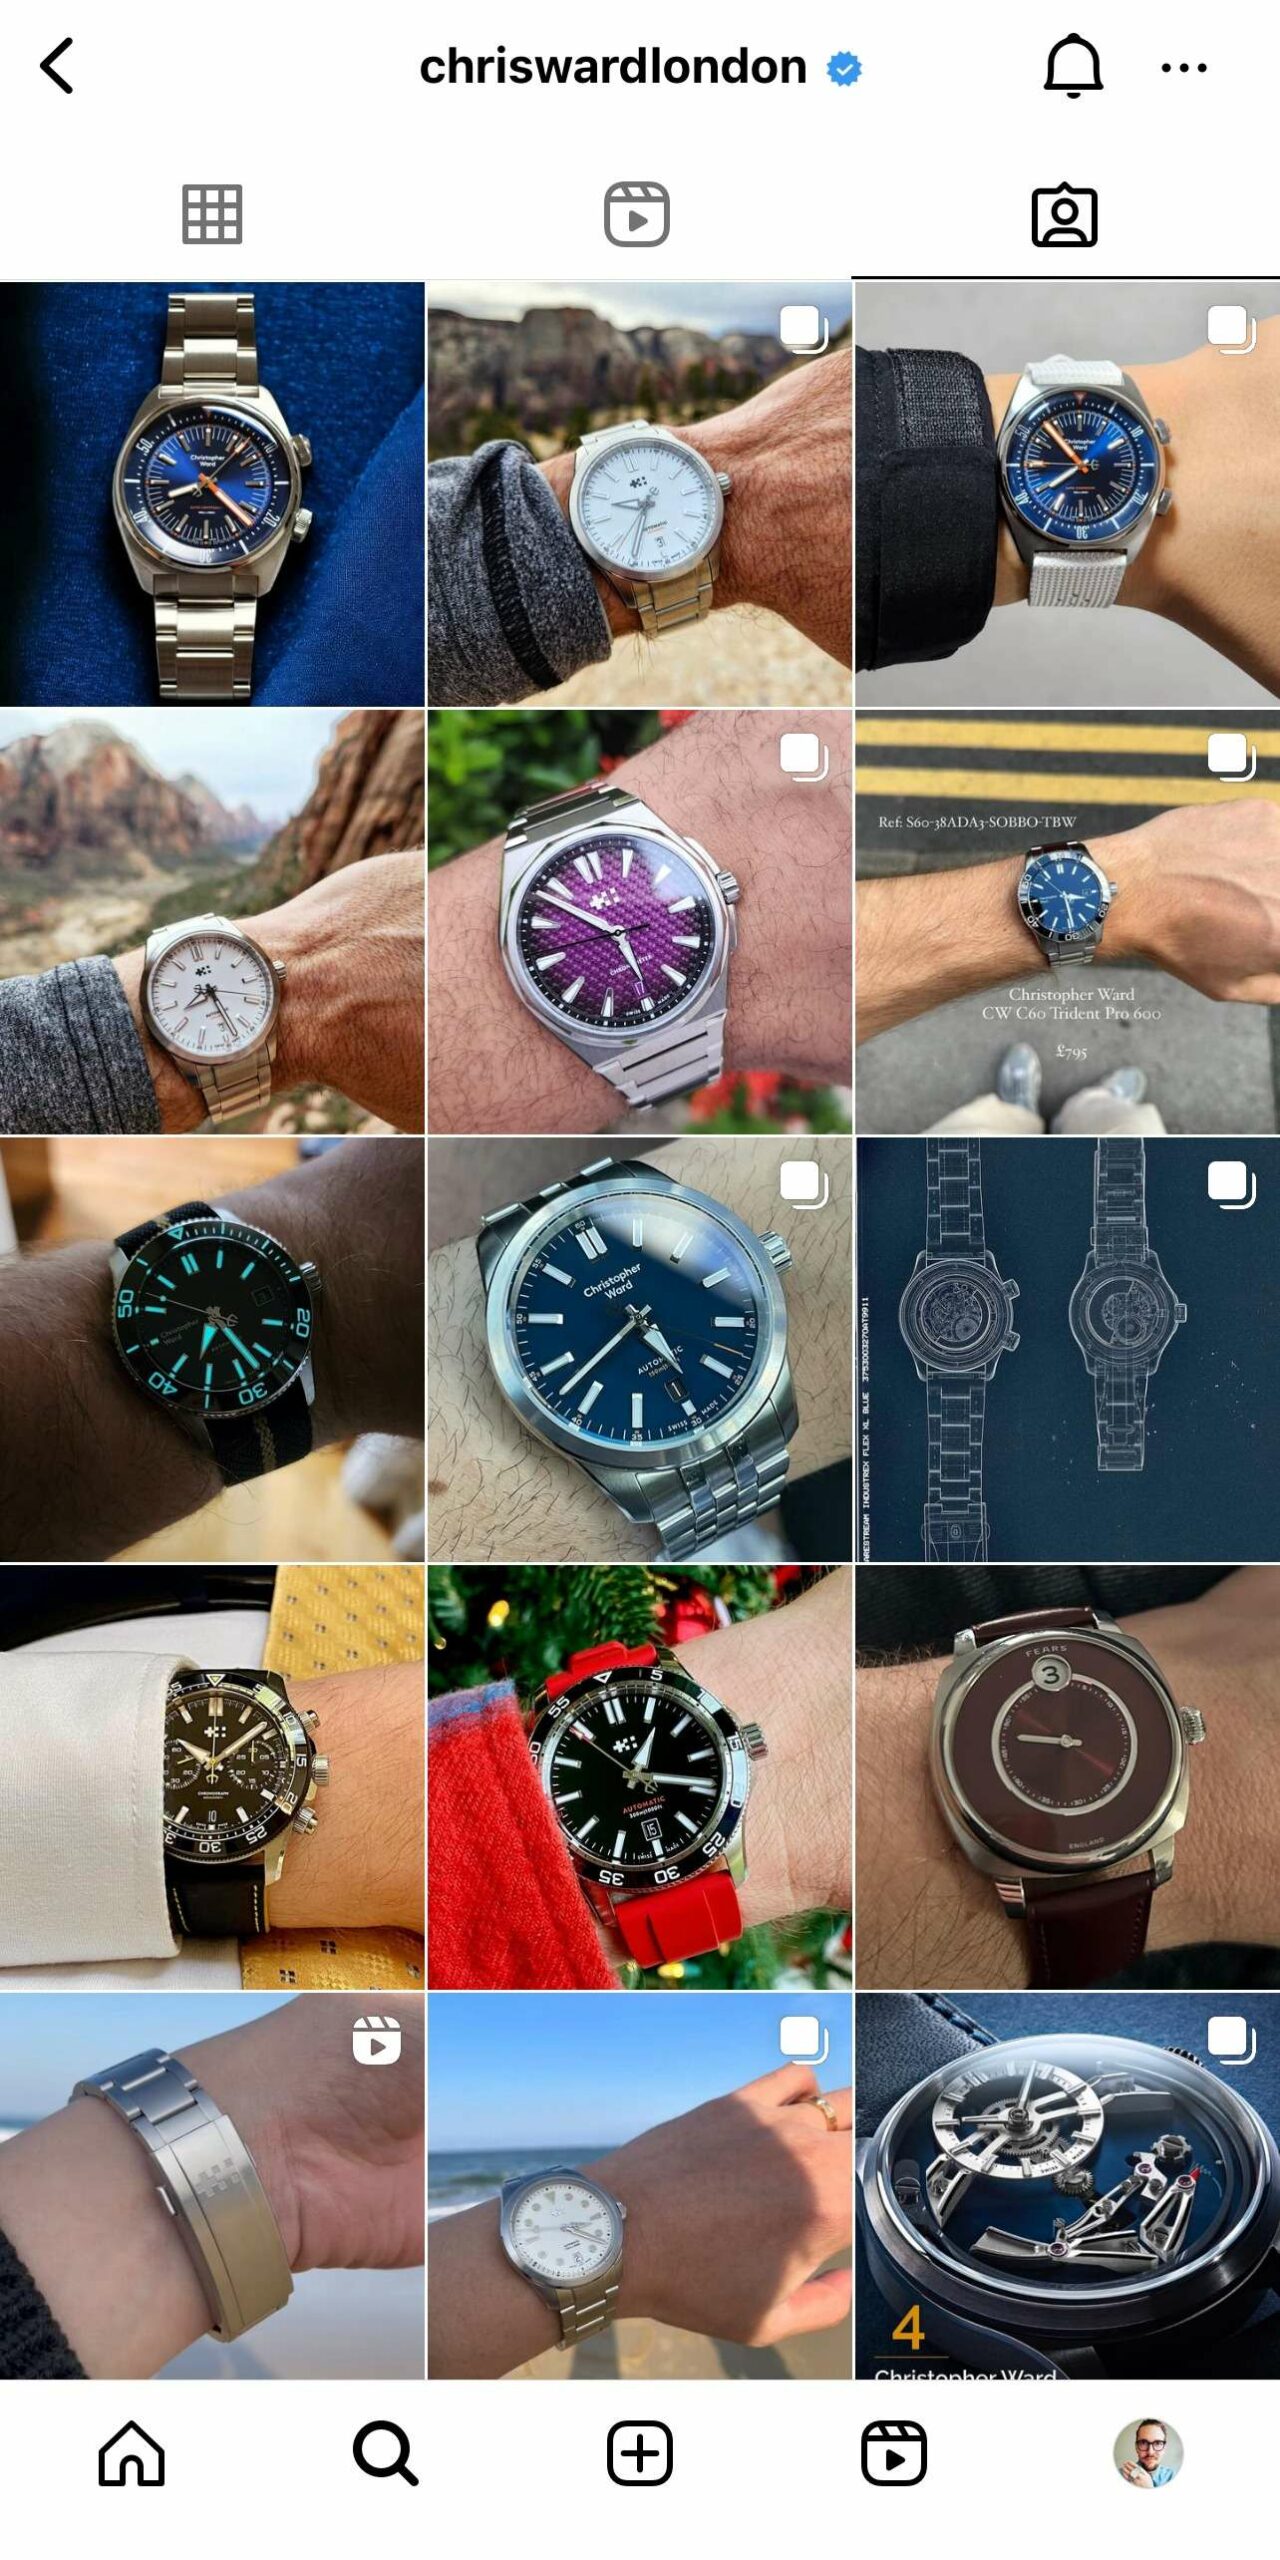 watch brands on Instagram Christopher Ward